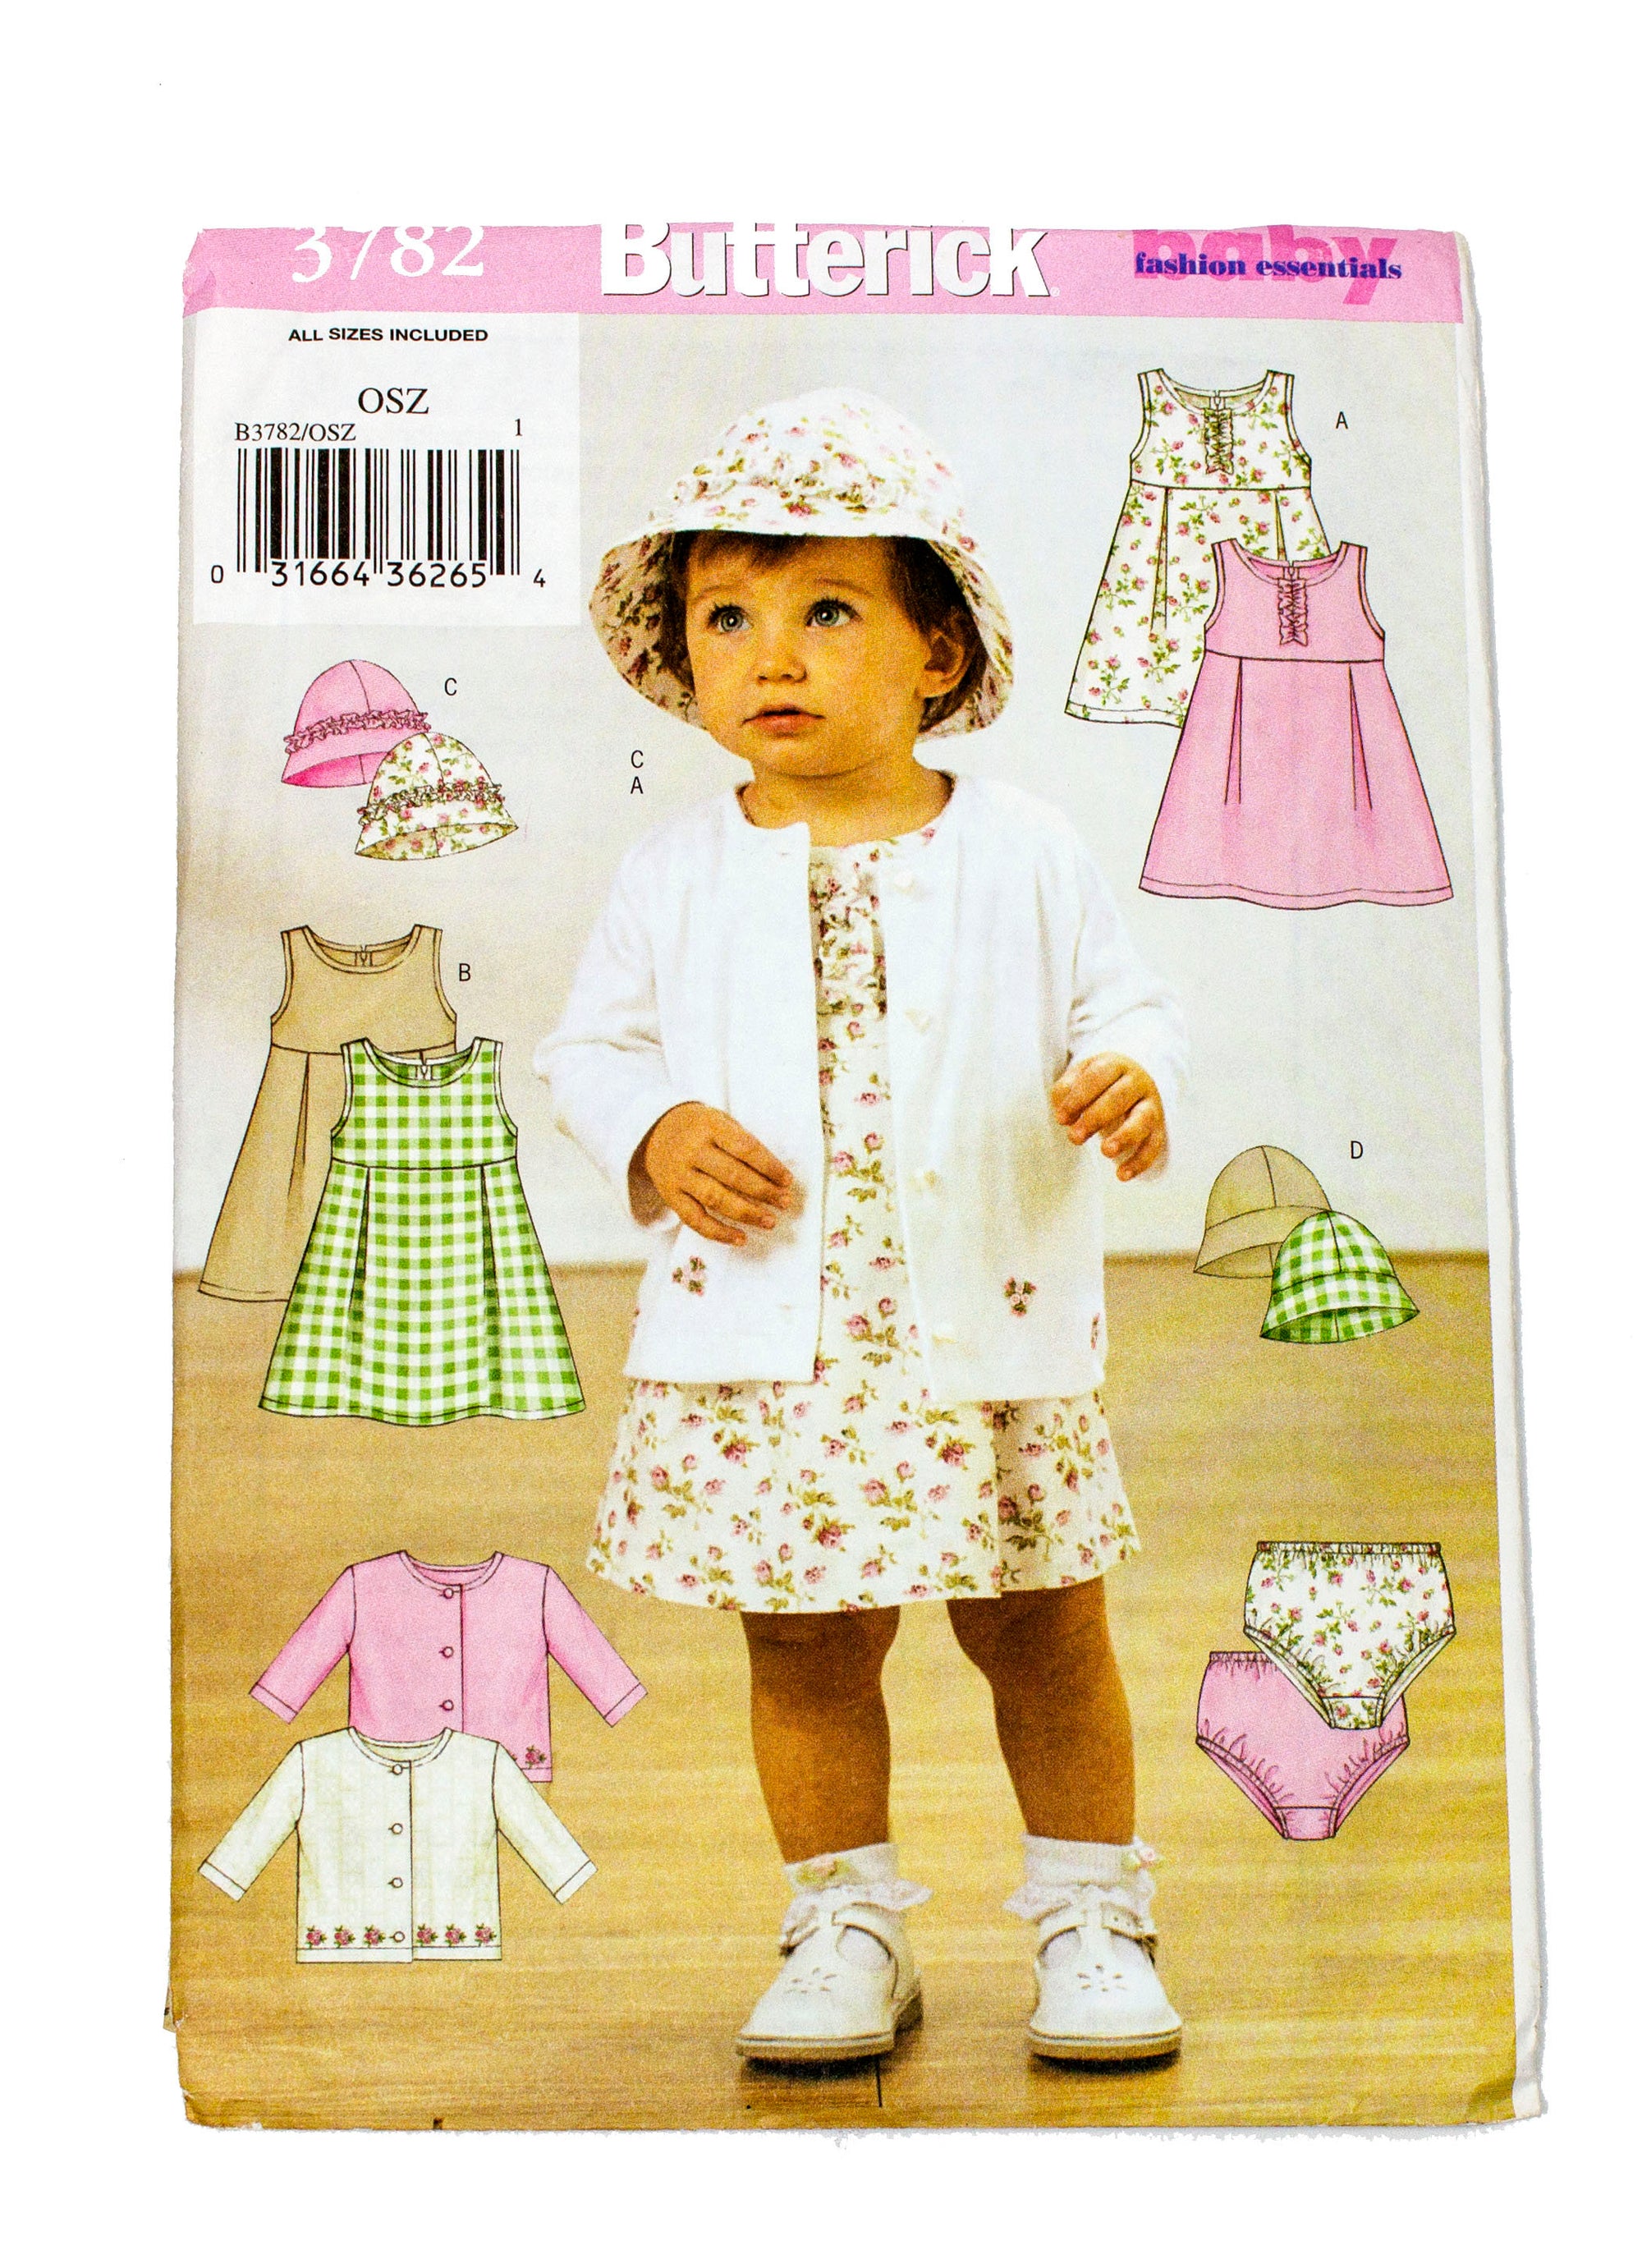 Butterick 3782 Infant Jacket, Dress, Panties, Hat - Size S - XL